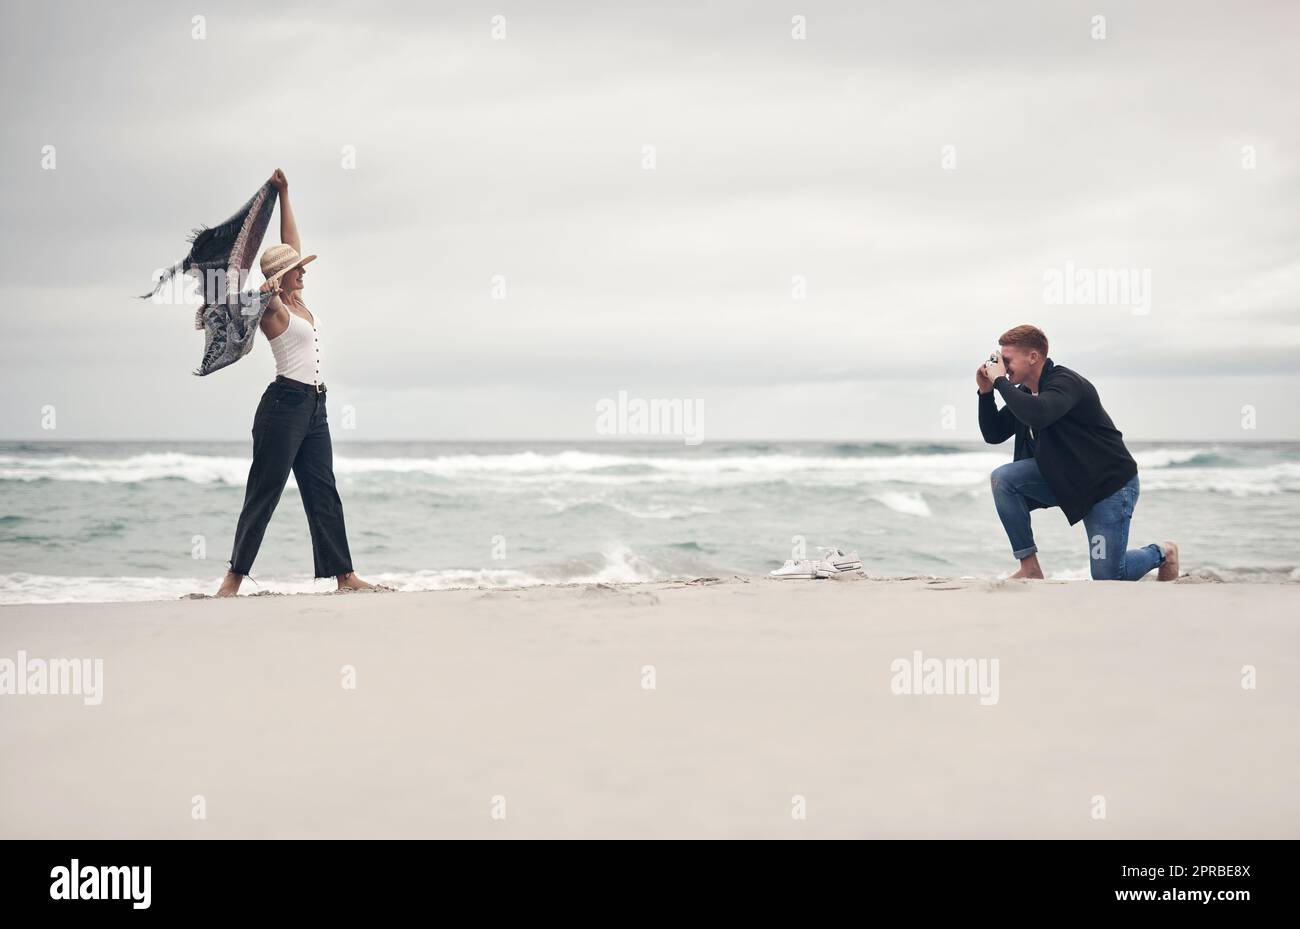 Mettiti in posa, babe. Un uomo che scatta foto della sua ragazza mentre trascorre del tempo in spiaggia. Foto Stock